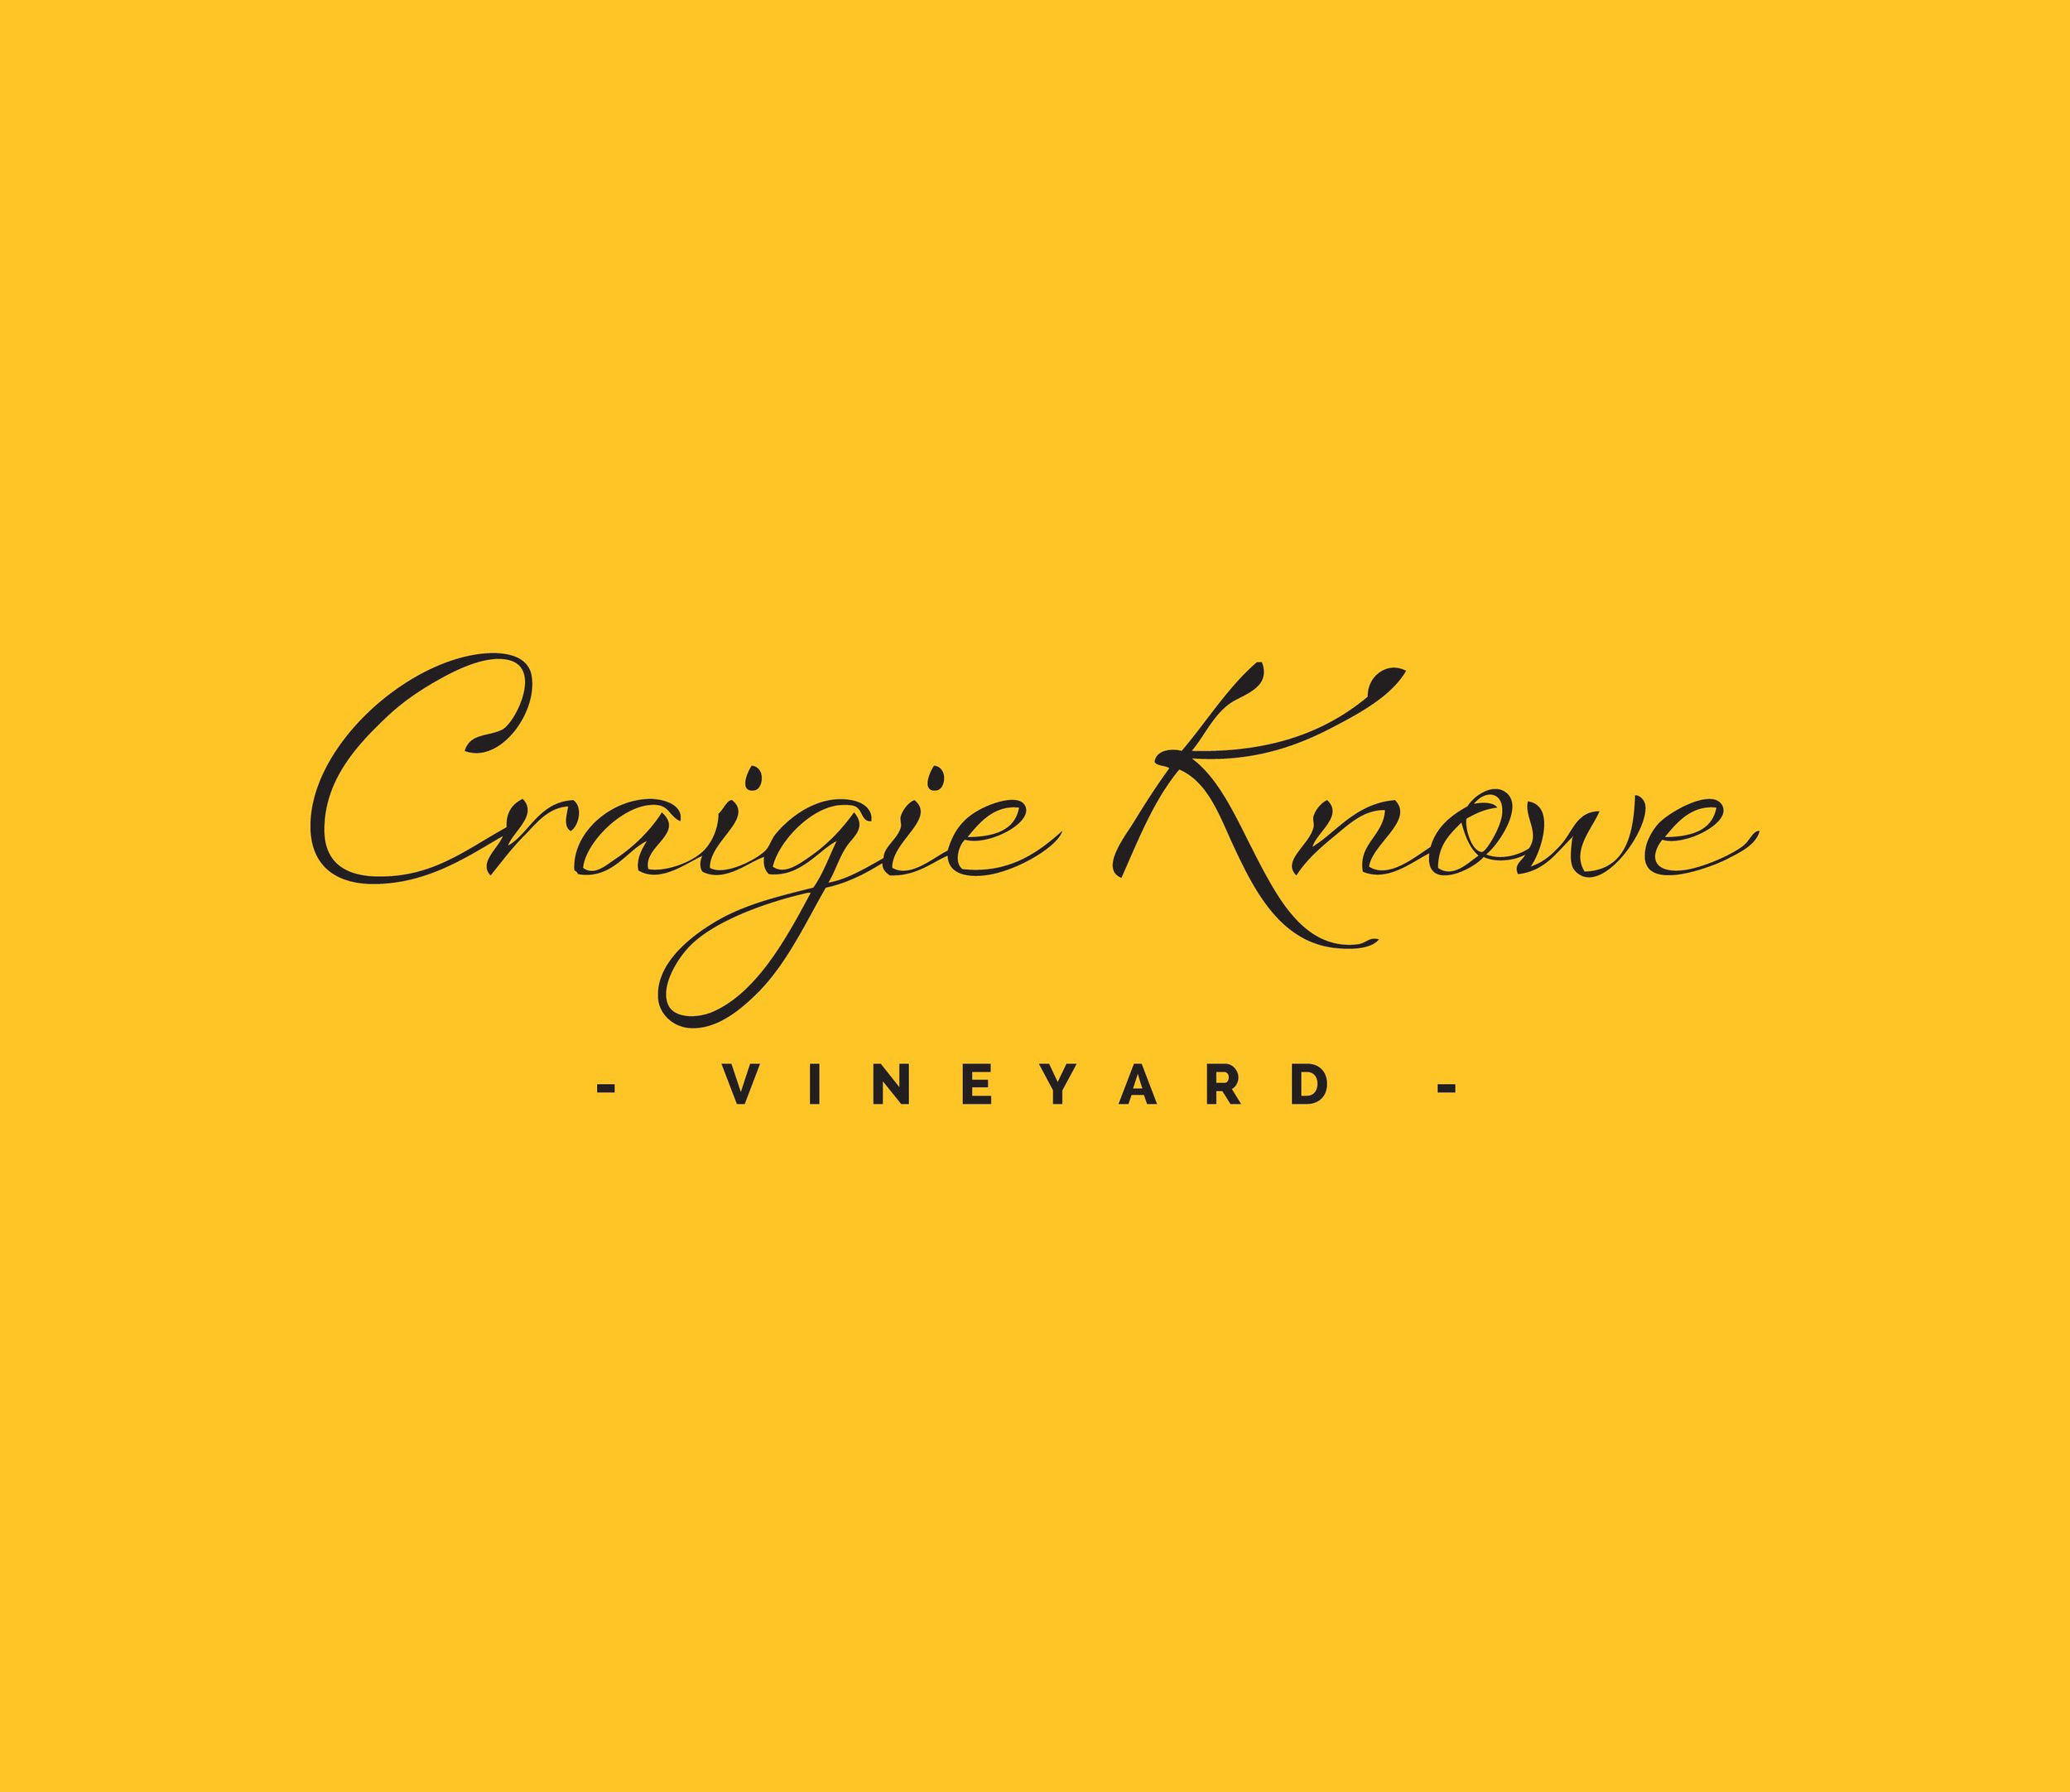 Craigie Knowe Vineyard - 6 hectares